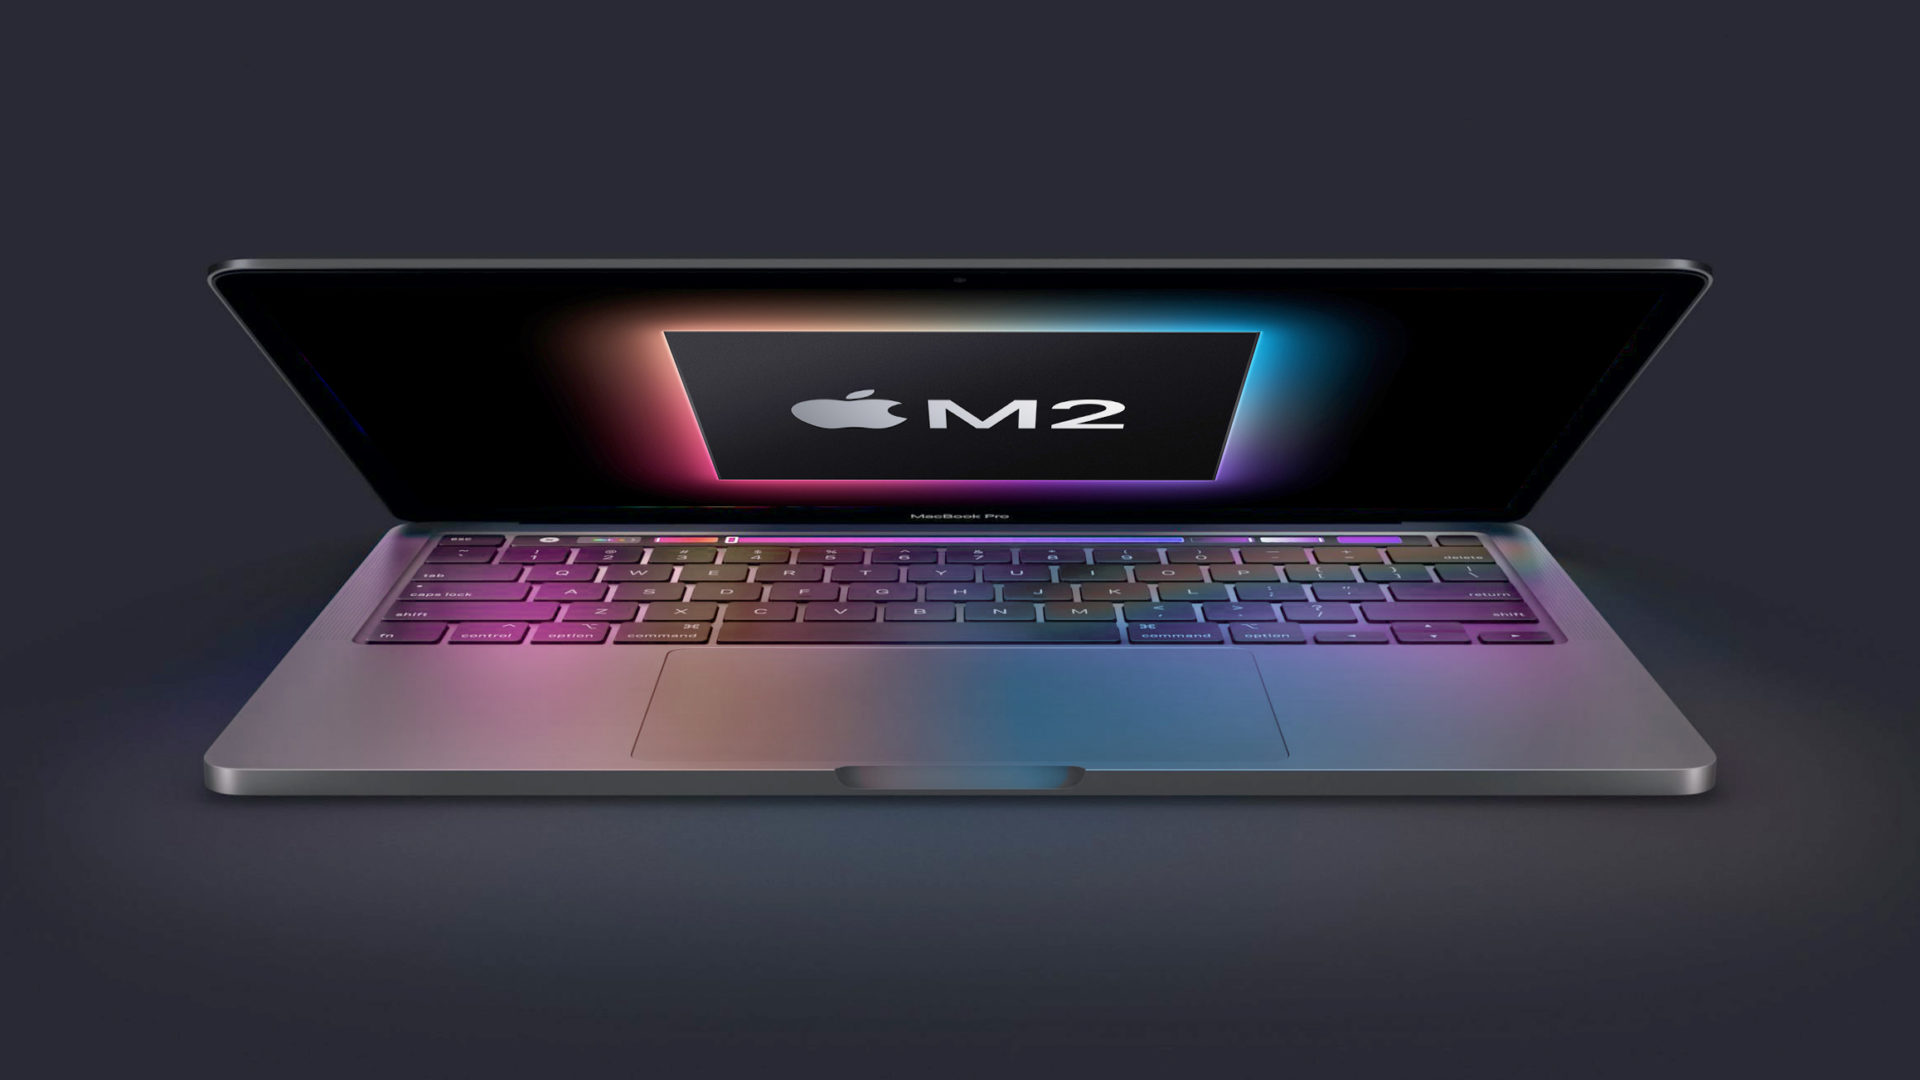 ลือ!! MacBook Pro รุ่น 13 นิ้ว ชิป M2 คงดีไซน์เดิม เปิดตัว มี.ค. นี้